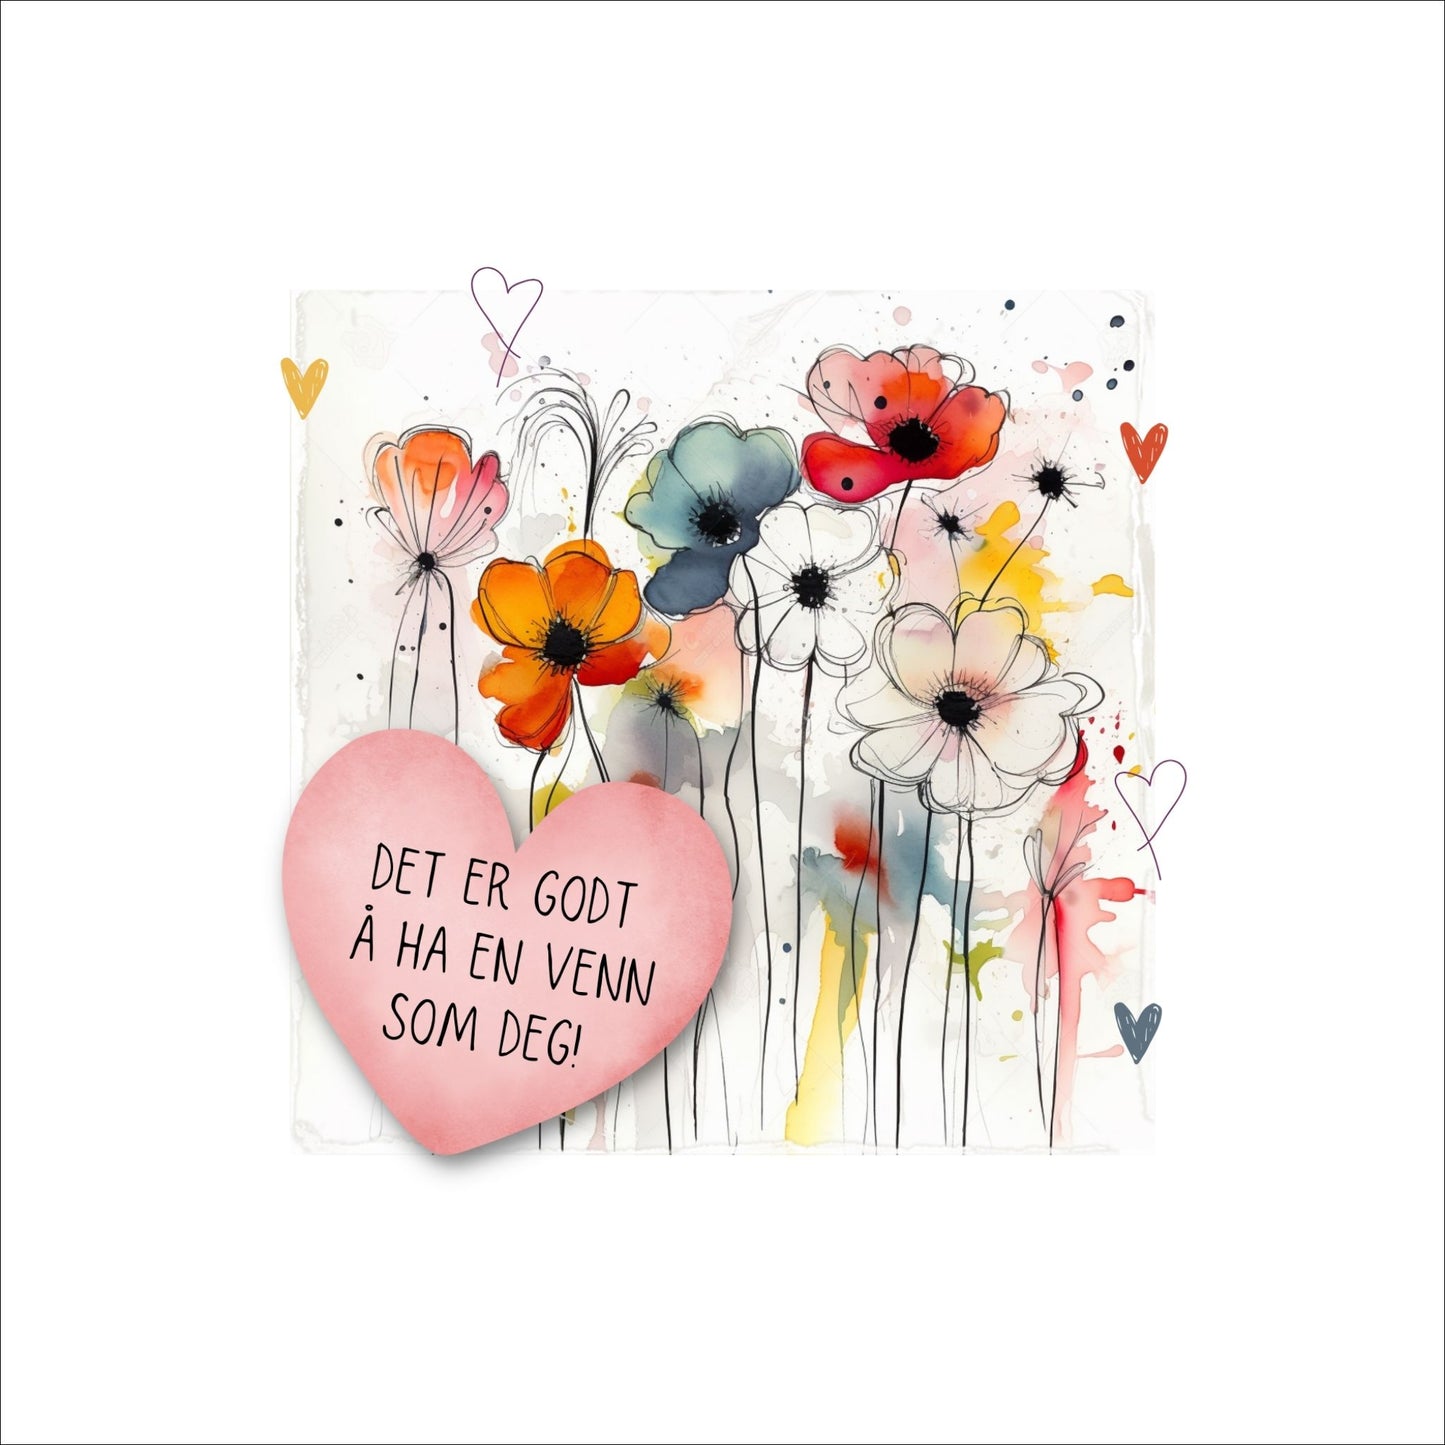 Plakat med rosa hjerte og tekst "Det er godt å ha en venn som deg" - og et motiv med blomster i gul, rød, hvit, blå og oransje. Med hvit kant på 4 cm. 